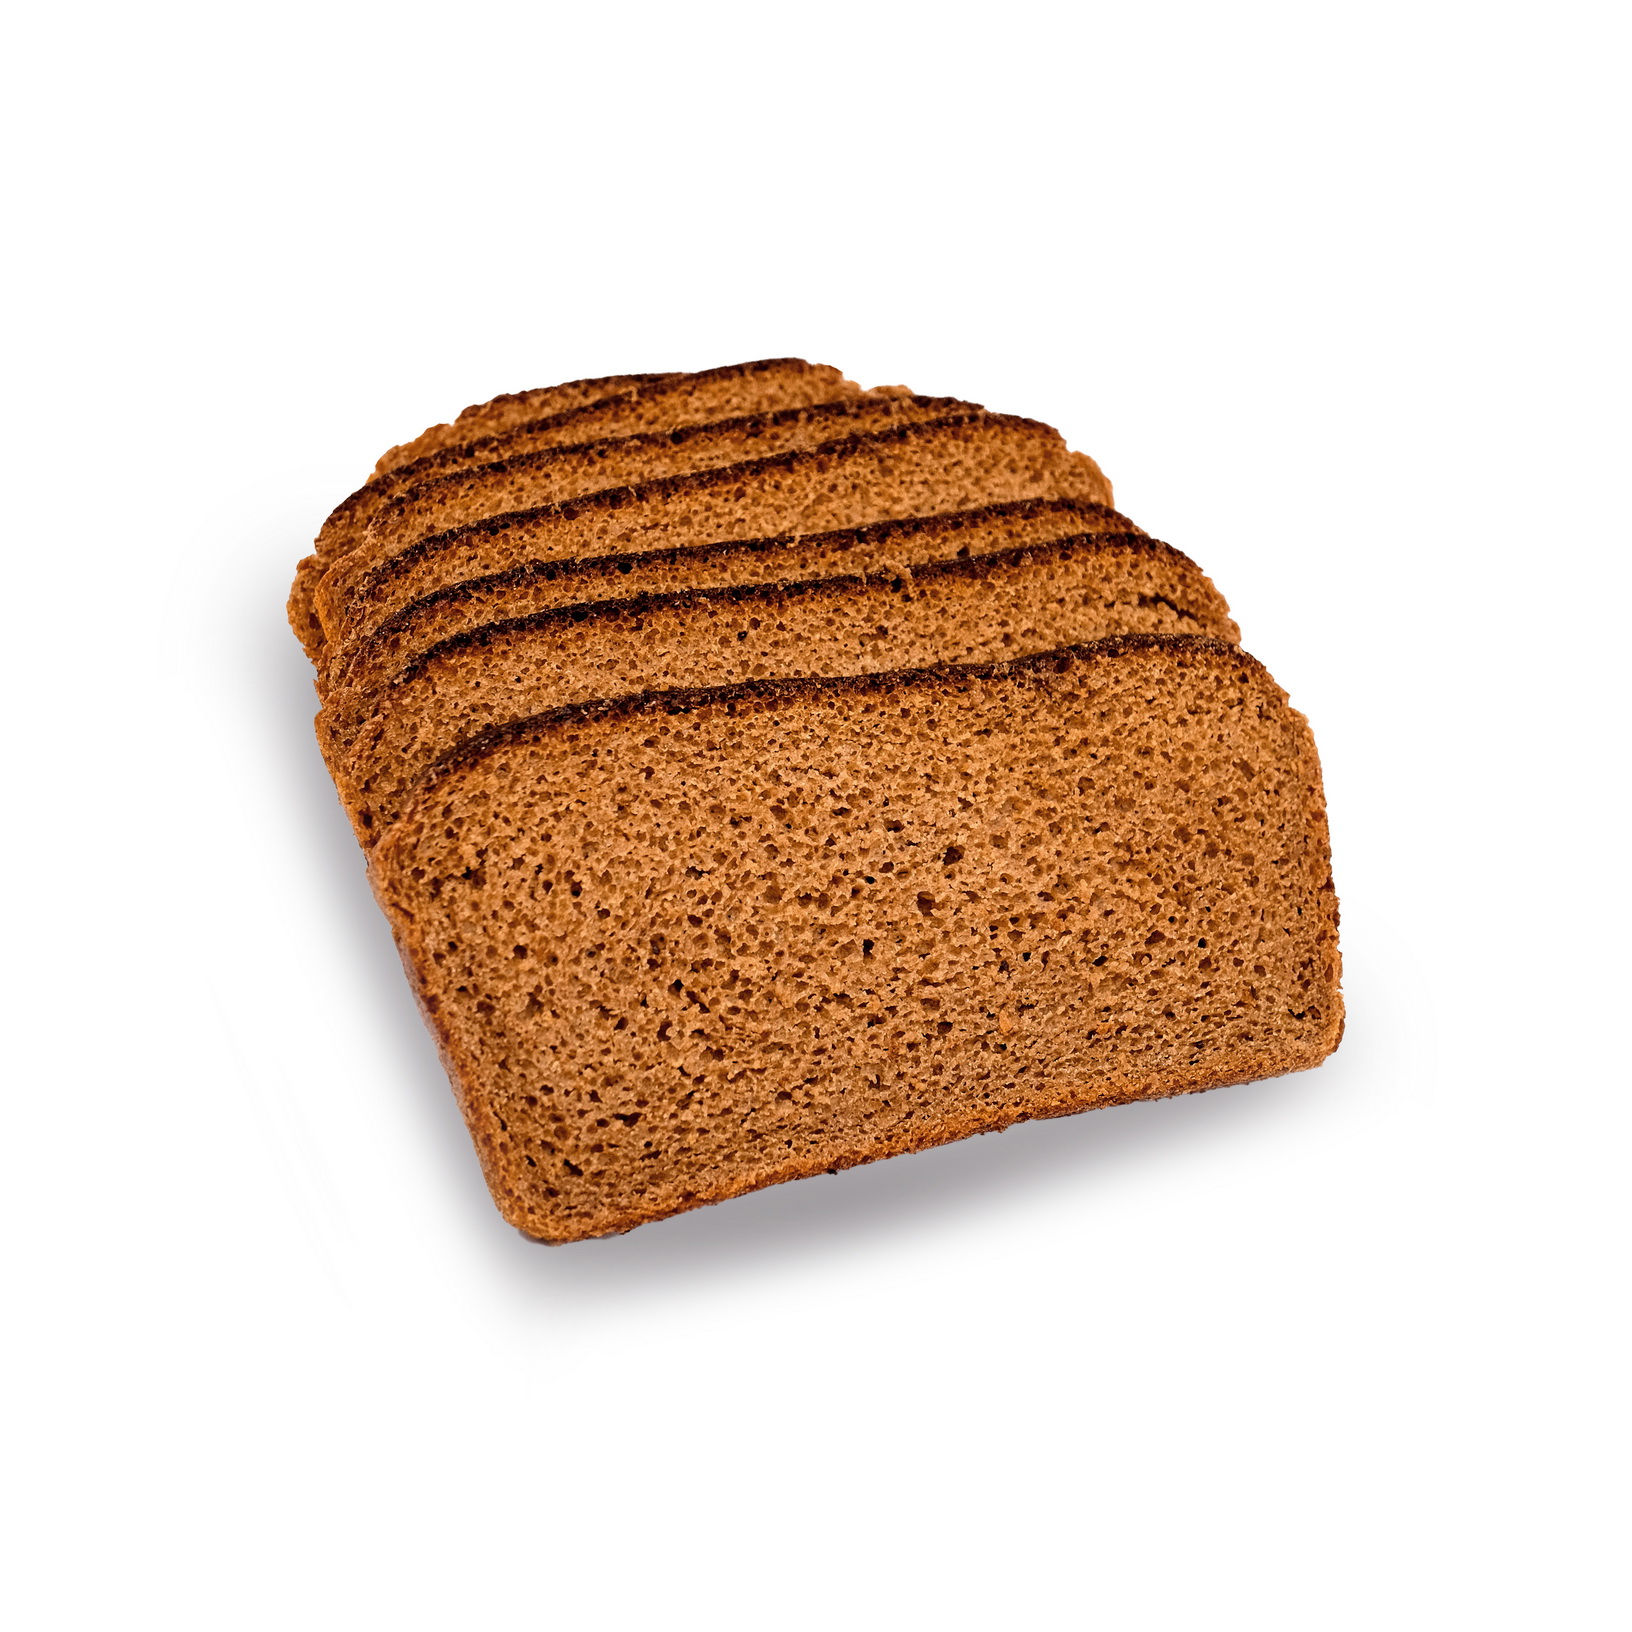 Хлебопек мурманск. Поморский хлеб. Хлеб тостерный хлебопёк. Хлебопёк хлеб солодовый, пшенично-ржаная мука, в нарезке 350 г. Хлеб Донской ~300-400 г.